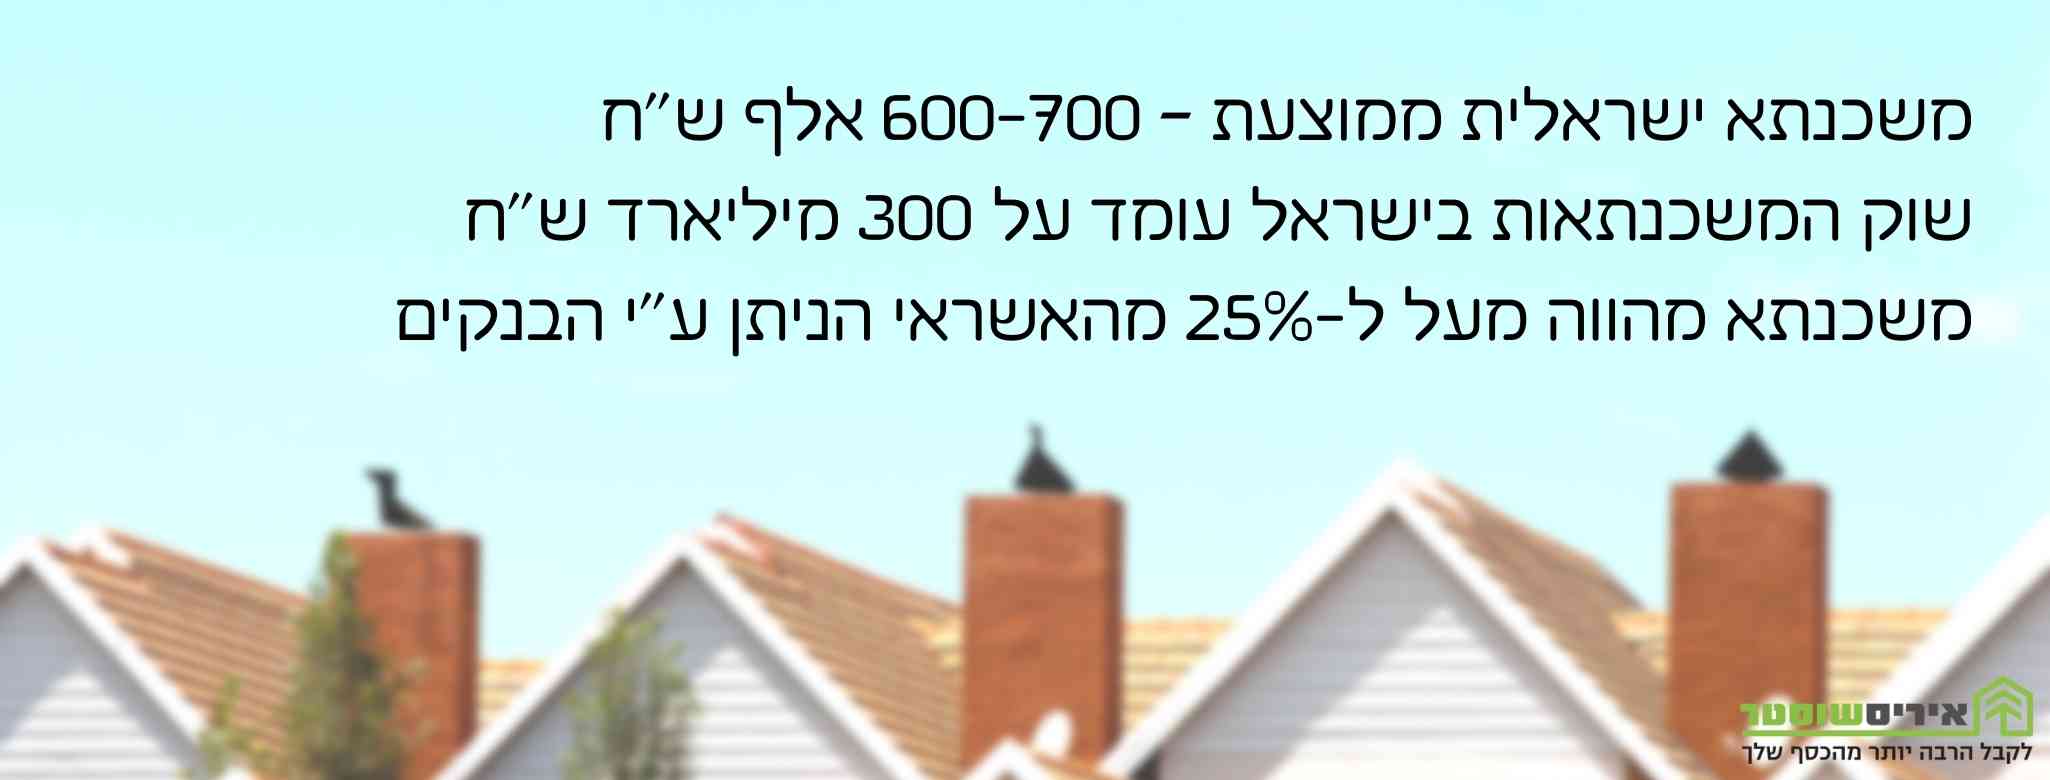 נתונים על משכנתא בישראל